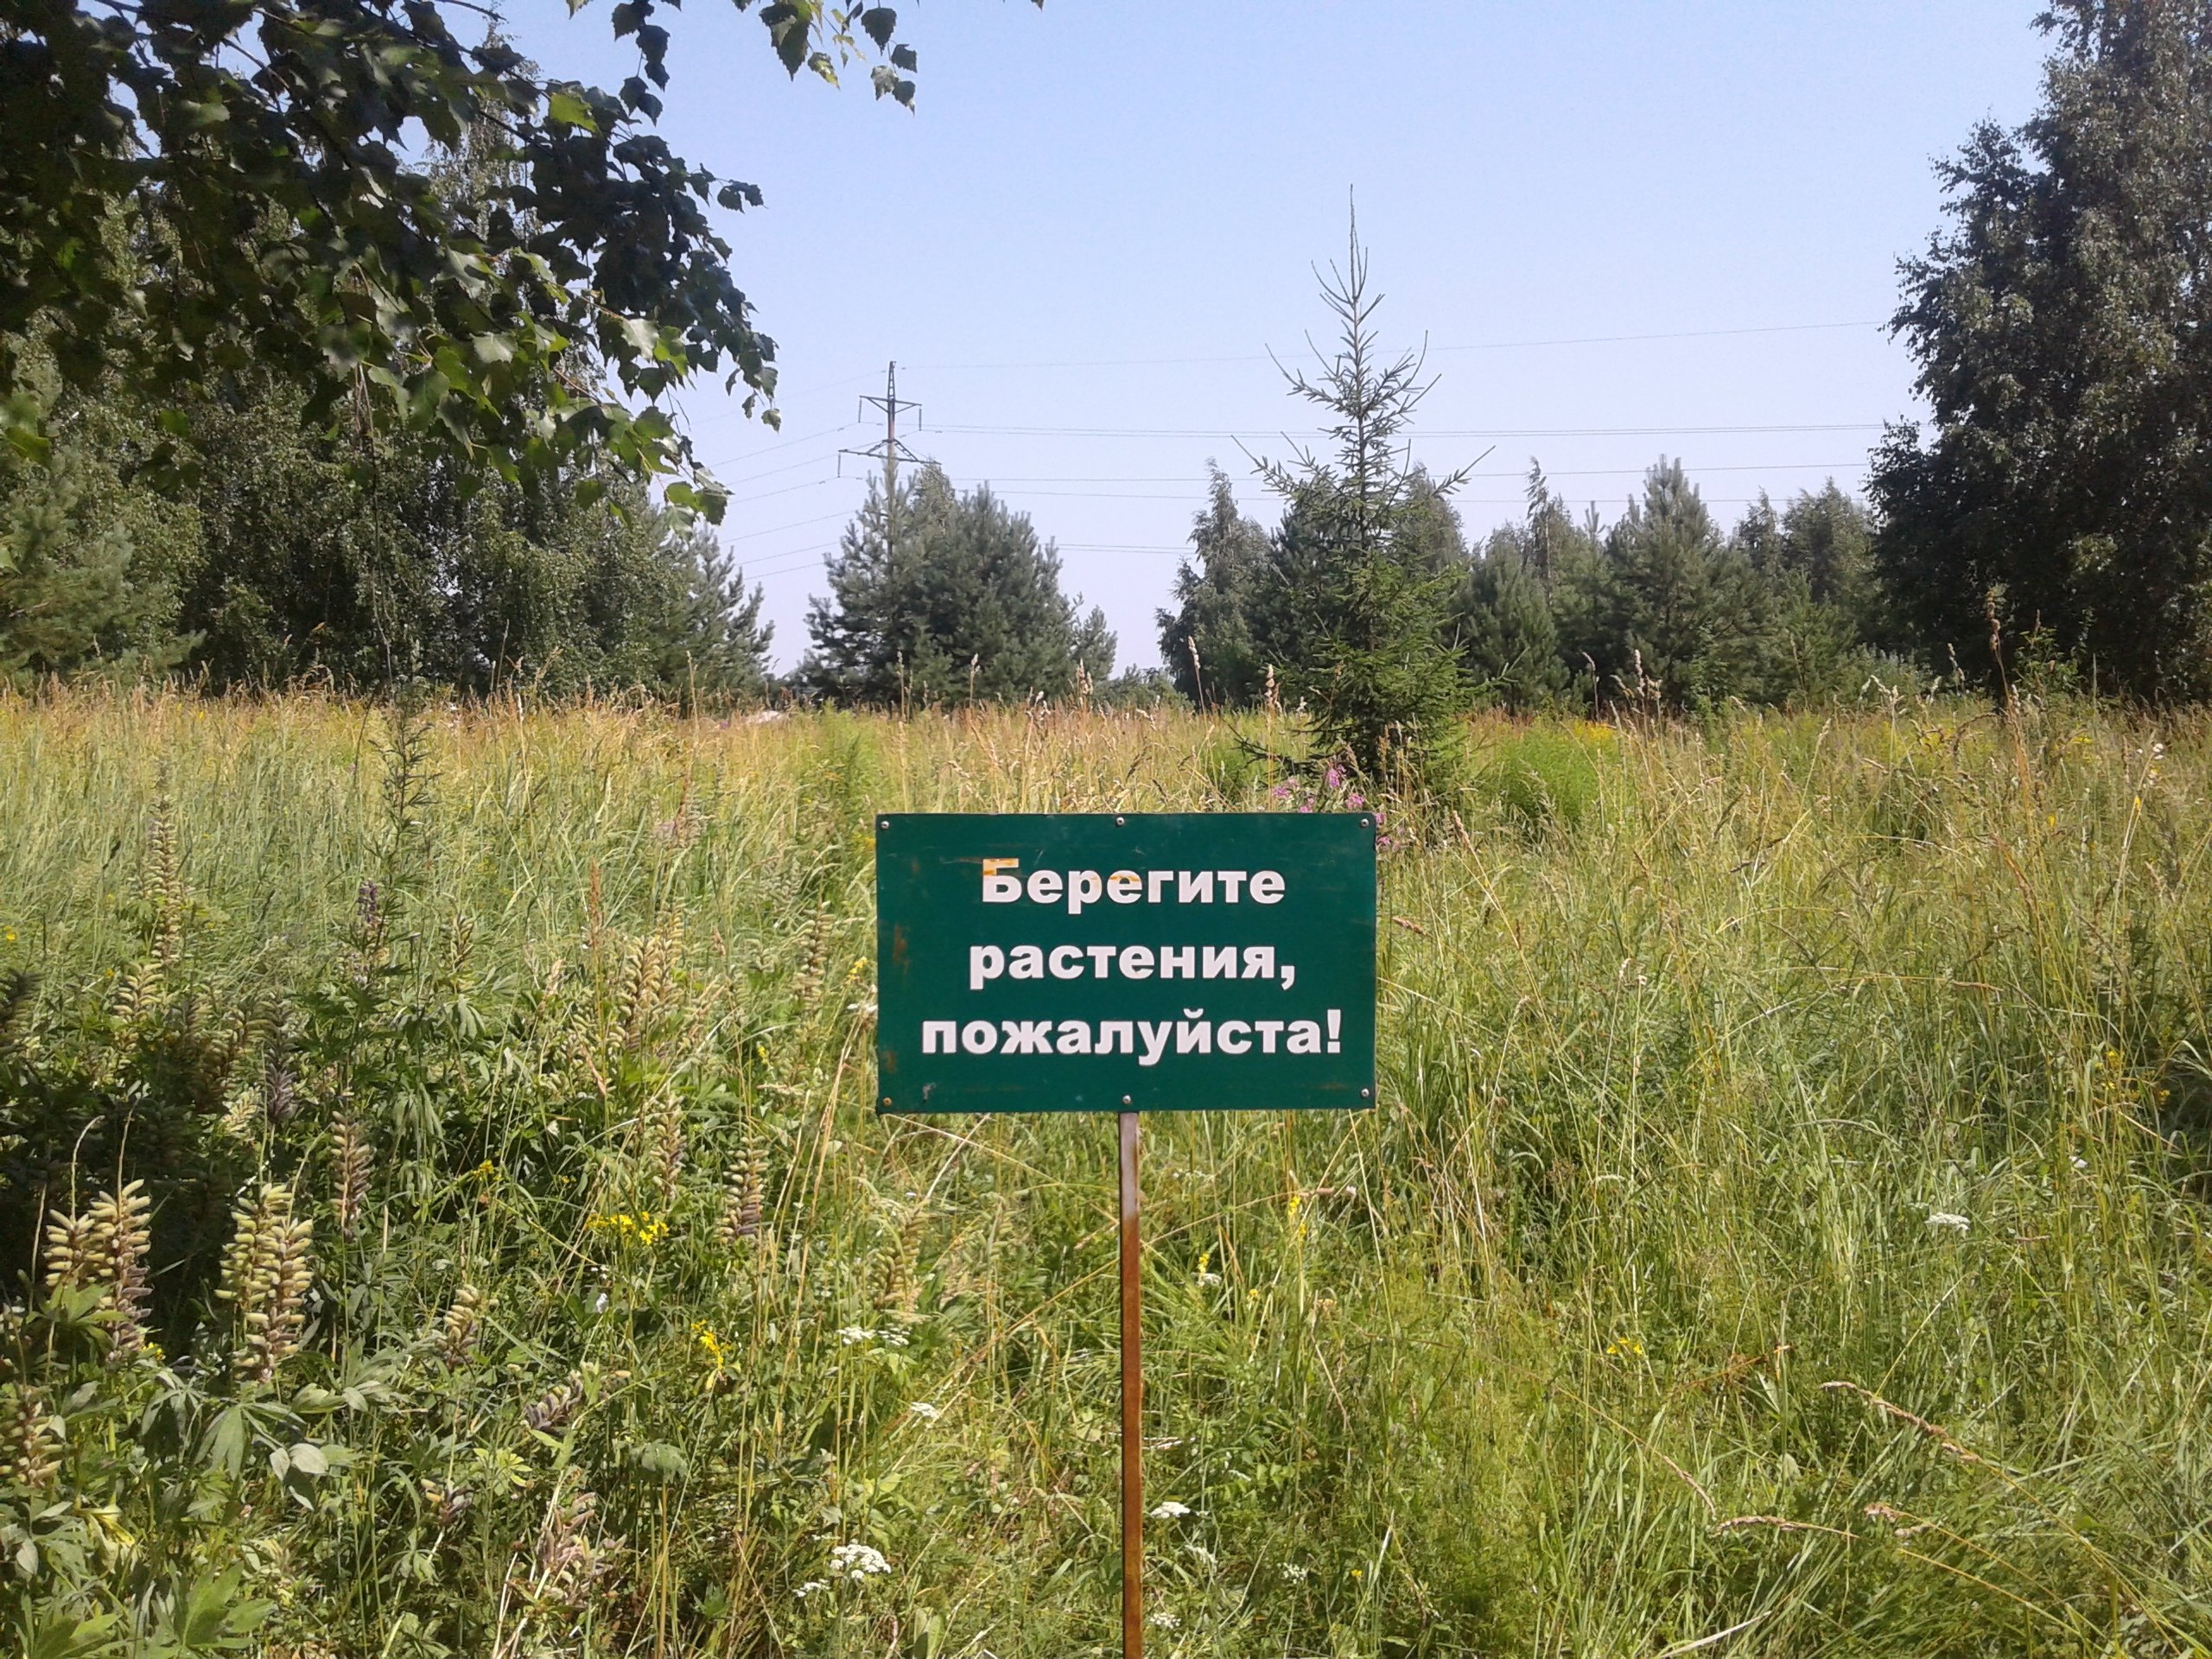 Ярушкинский дендропарк в Ижевске получит статус особо охраняемой природной территории